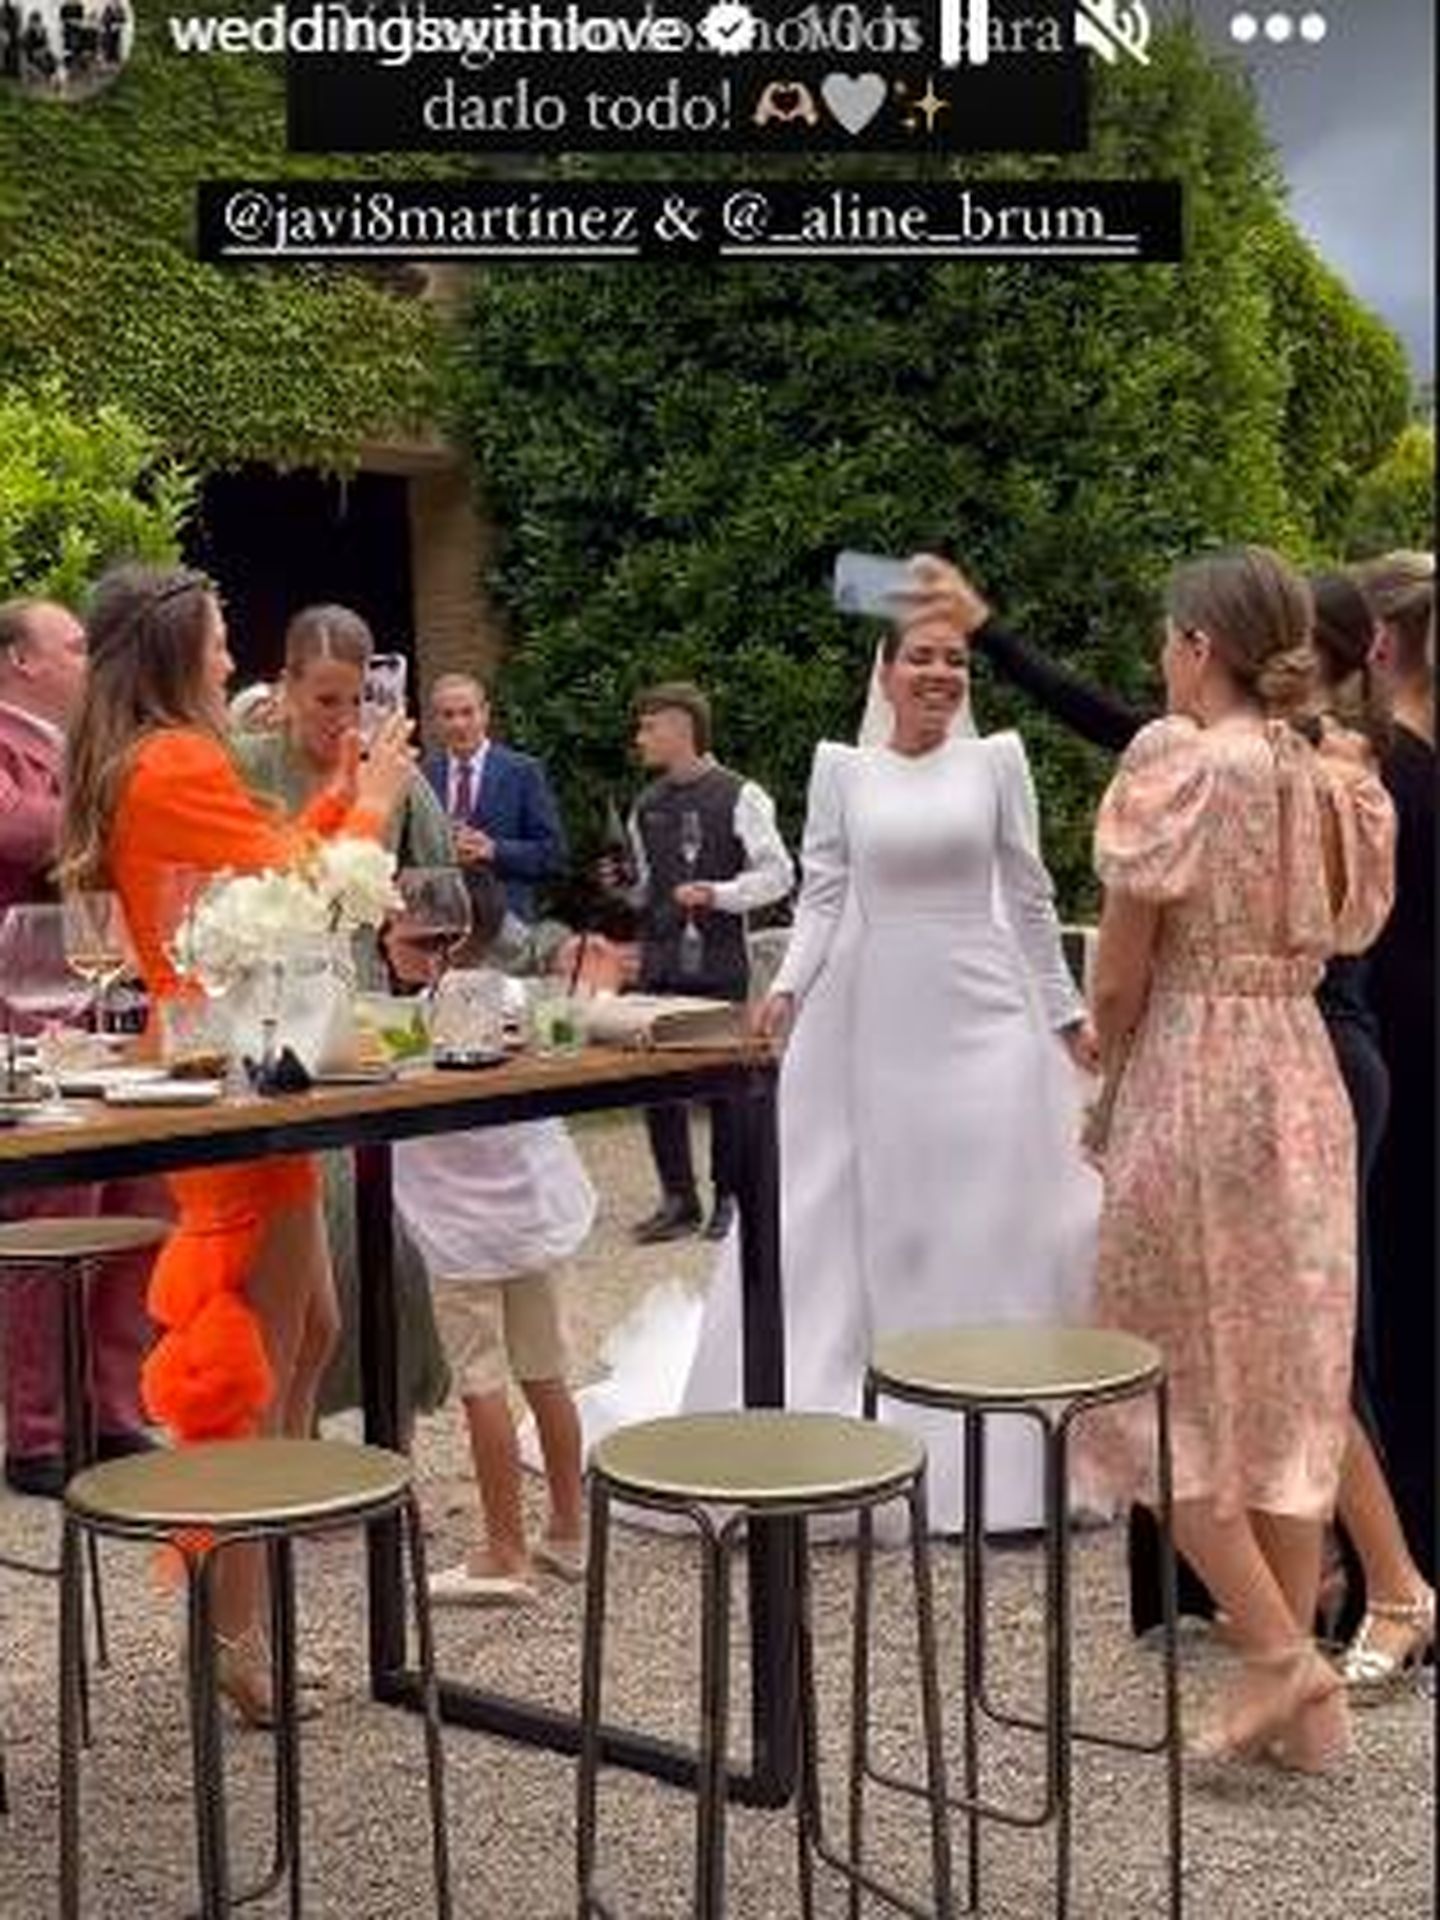 La novia, disfrutando con sus invitados tras el enlace. (IG)